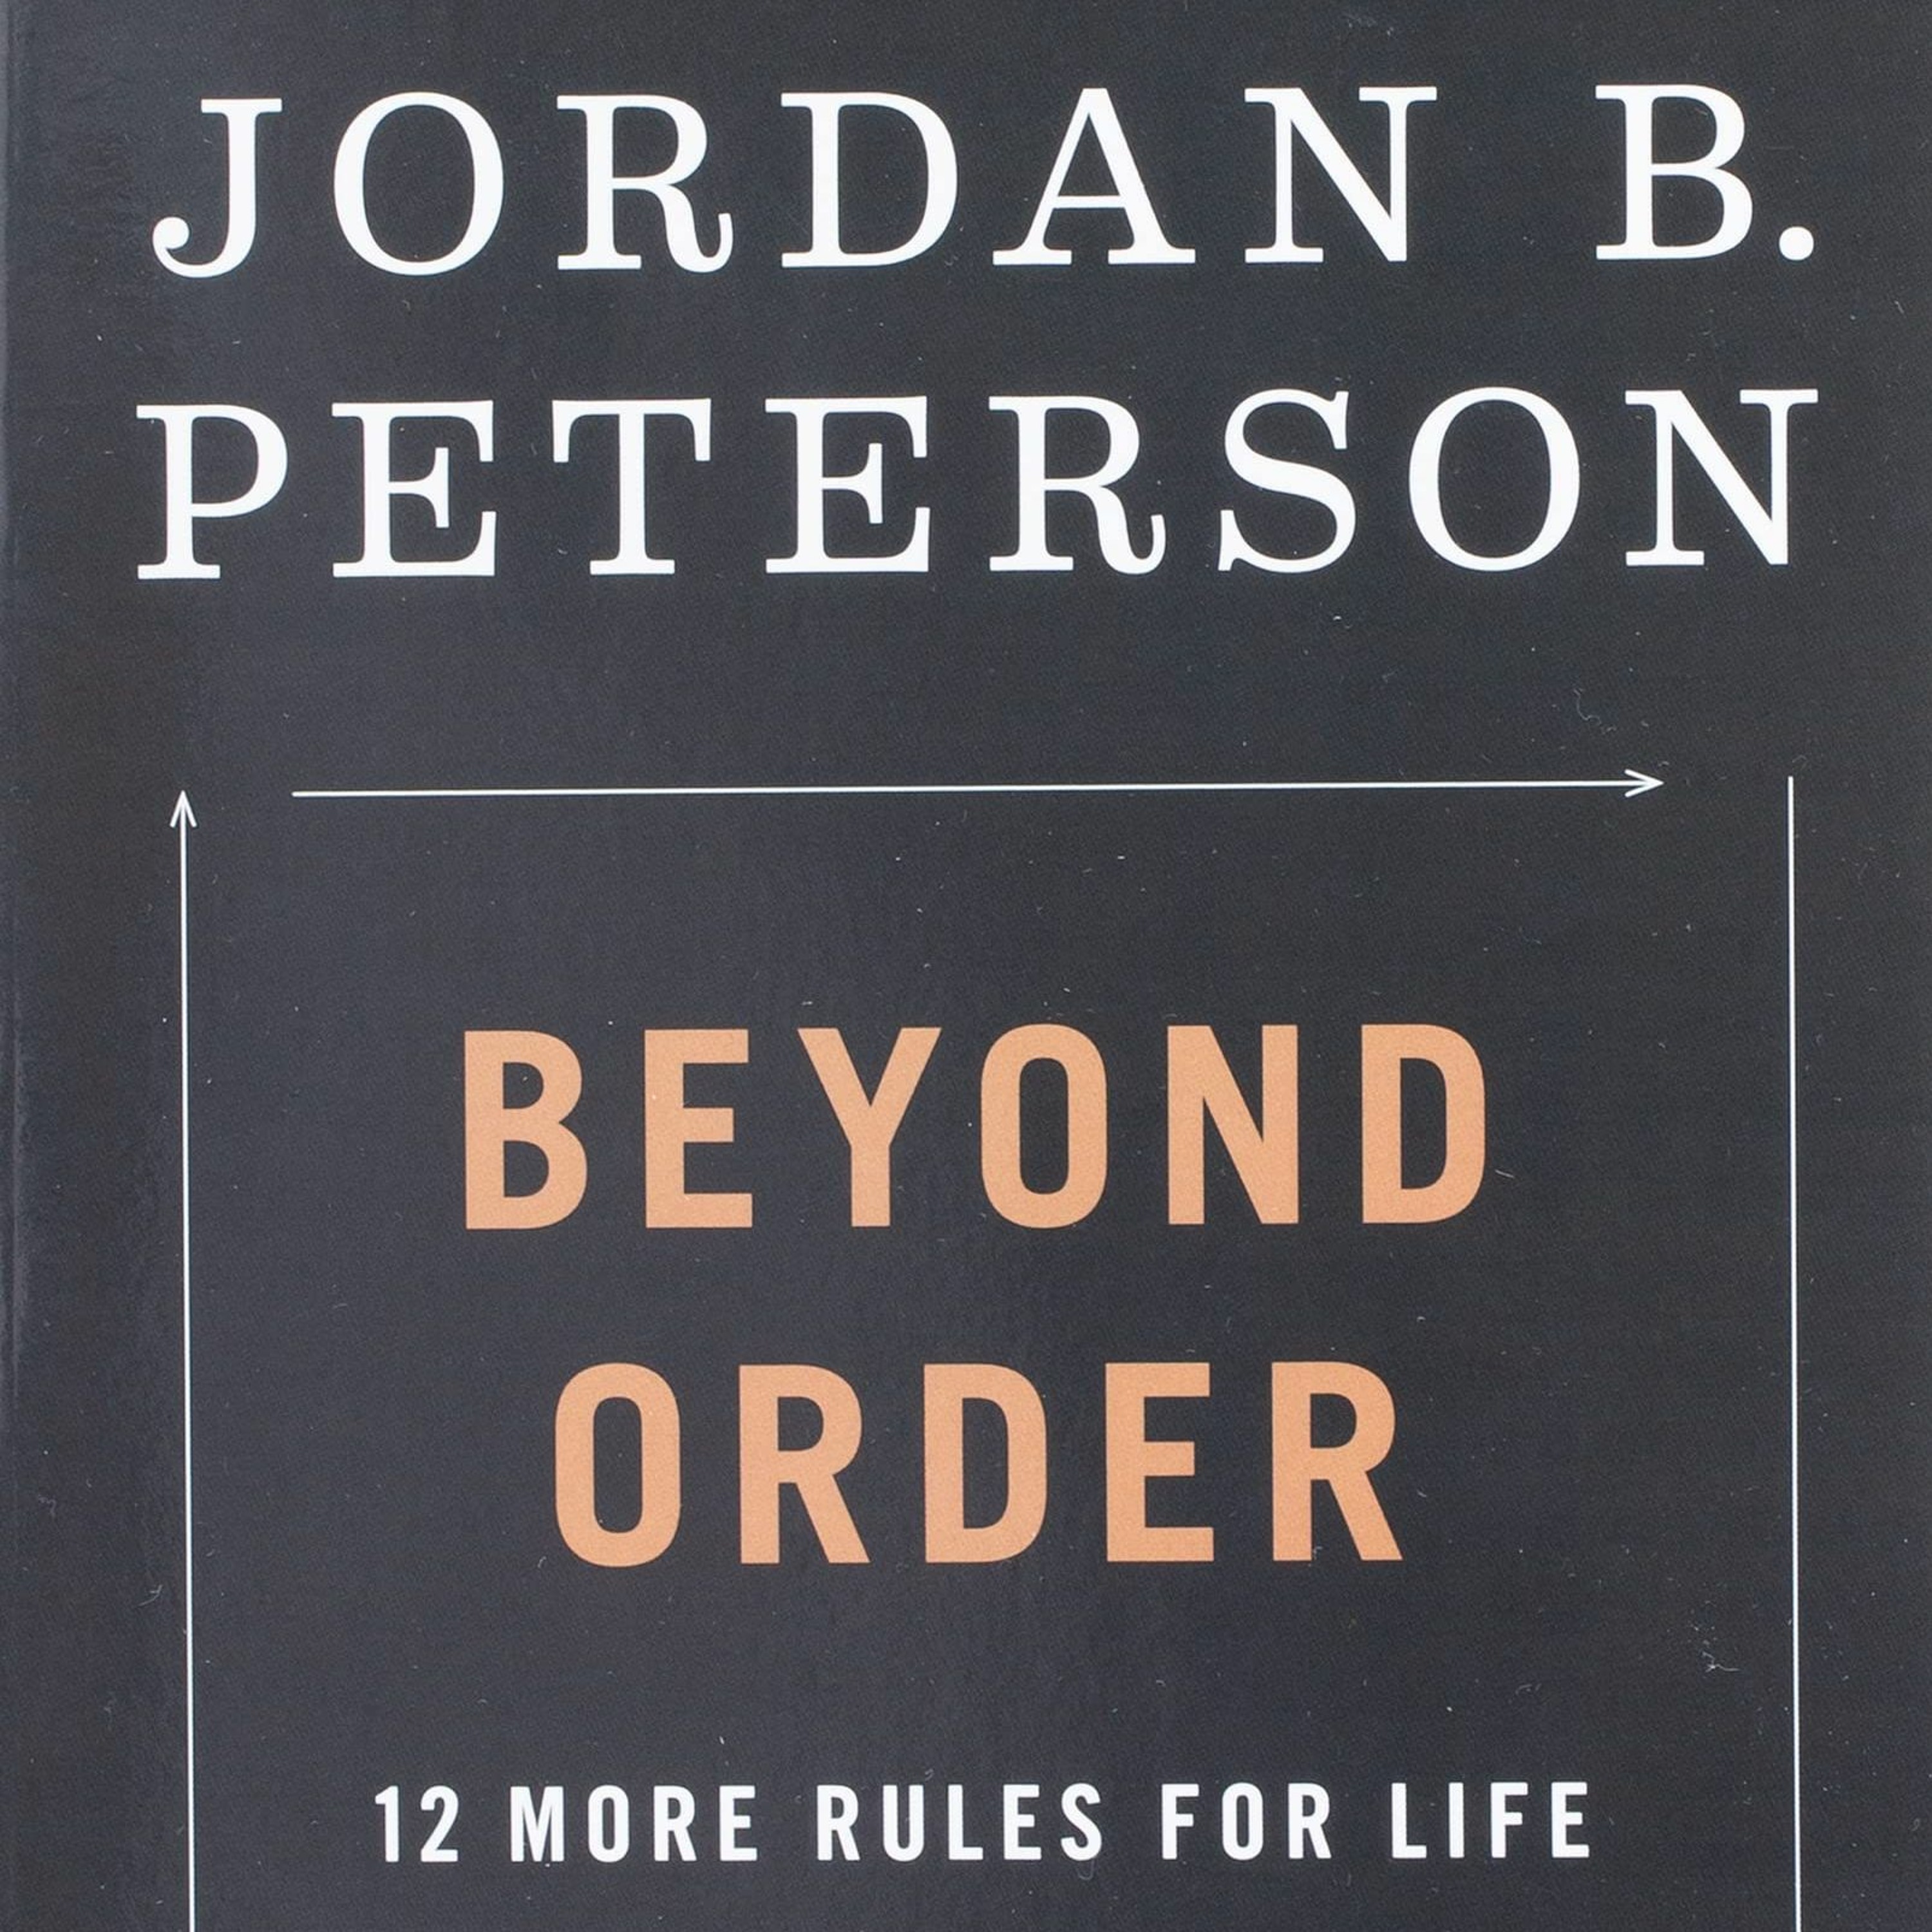 249. Podcast Mužom.sk: Řád není všechno - Jordan B. Peterson